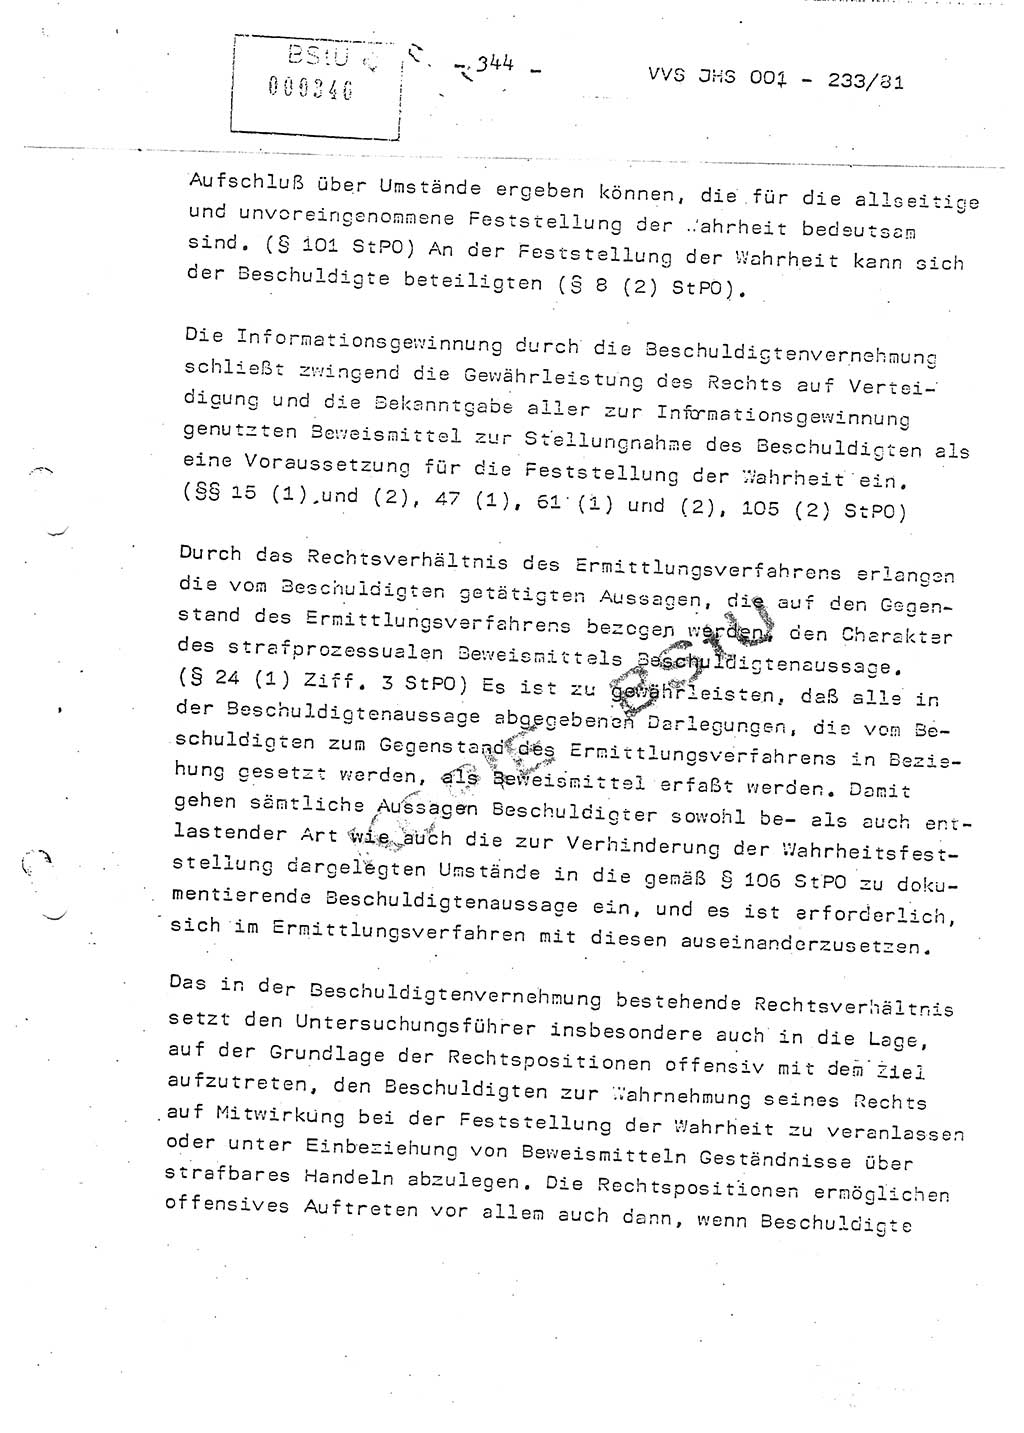 Dissertation Oberstleutnant Horst Zank (JHS), Oberstleutnant Dr. Karl-Heinz Knoblauch (JHS), Oberstleutnant Gustav-Adolf Kowalewski (HA Ⅸ), Oberstleutnant Wolfgang Plötner (HA Ⅸ), Ministerium für Staatssicherheit (MfS) [Deutsche Demokratische Republik (DDR)], Juristische Hochschule (JHS), Vertrauliche Verschlußsache (VVS) o001-233/81, Potsdam 1981, Blatt 344 (Diss. MfS DDR JHS VVS o001-233/81 1981, Bl. 344)